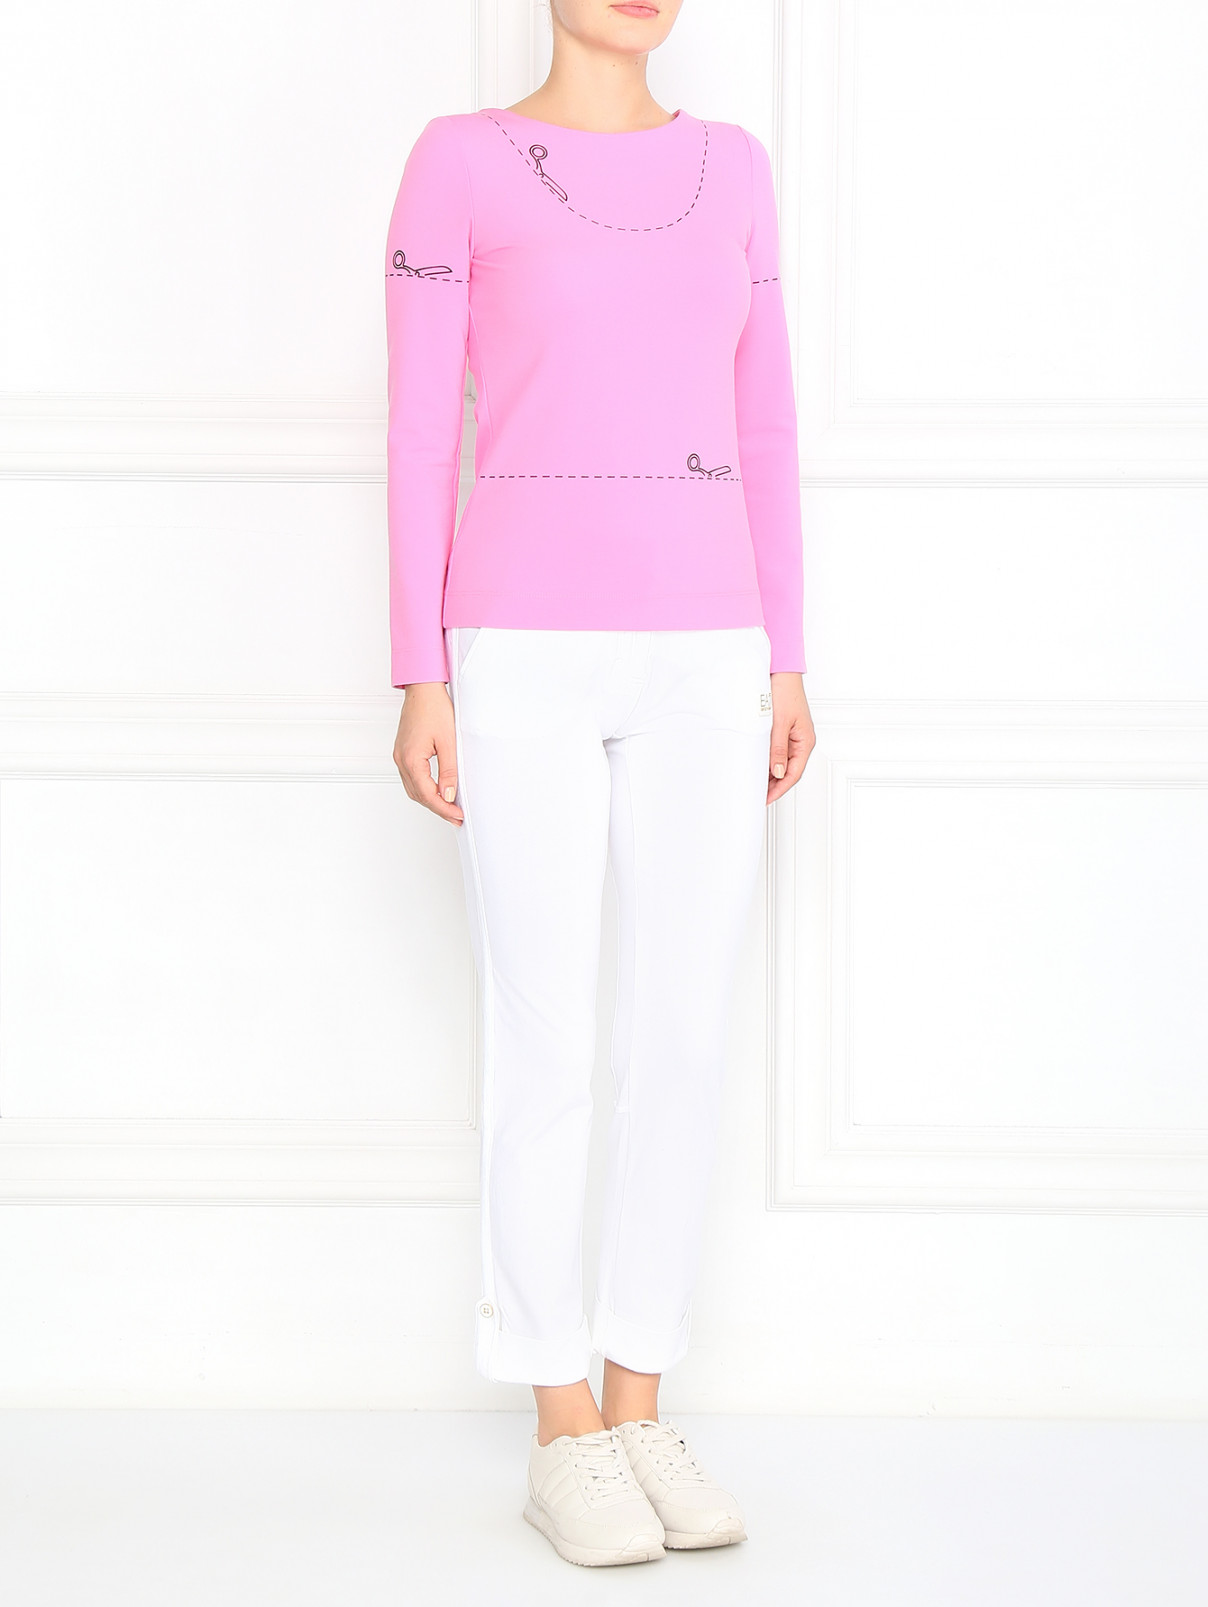 Лонгслив с принтом Moschino Couture  –  Модель Общий вид  – Цвет:  Розовый